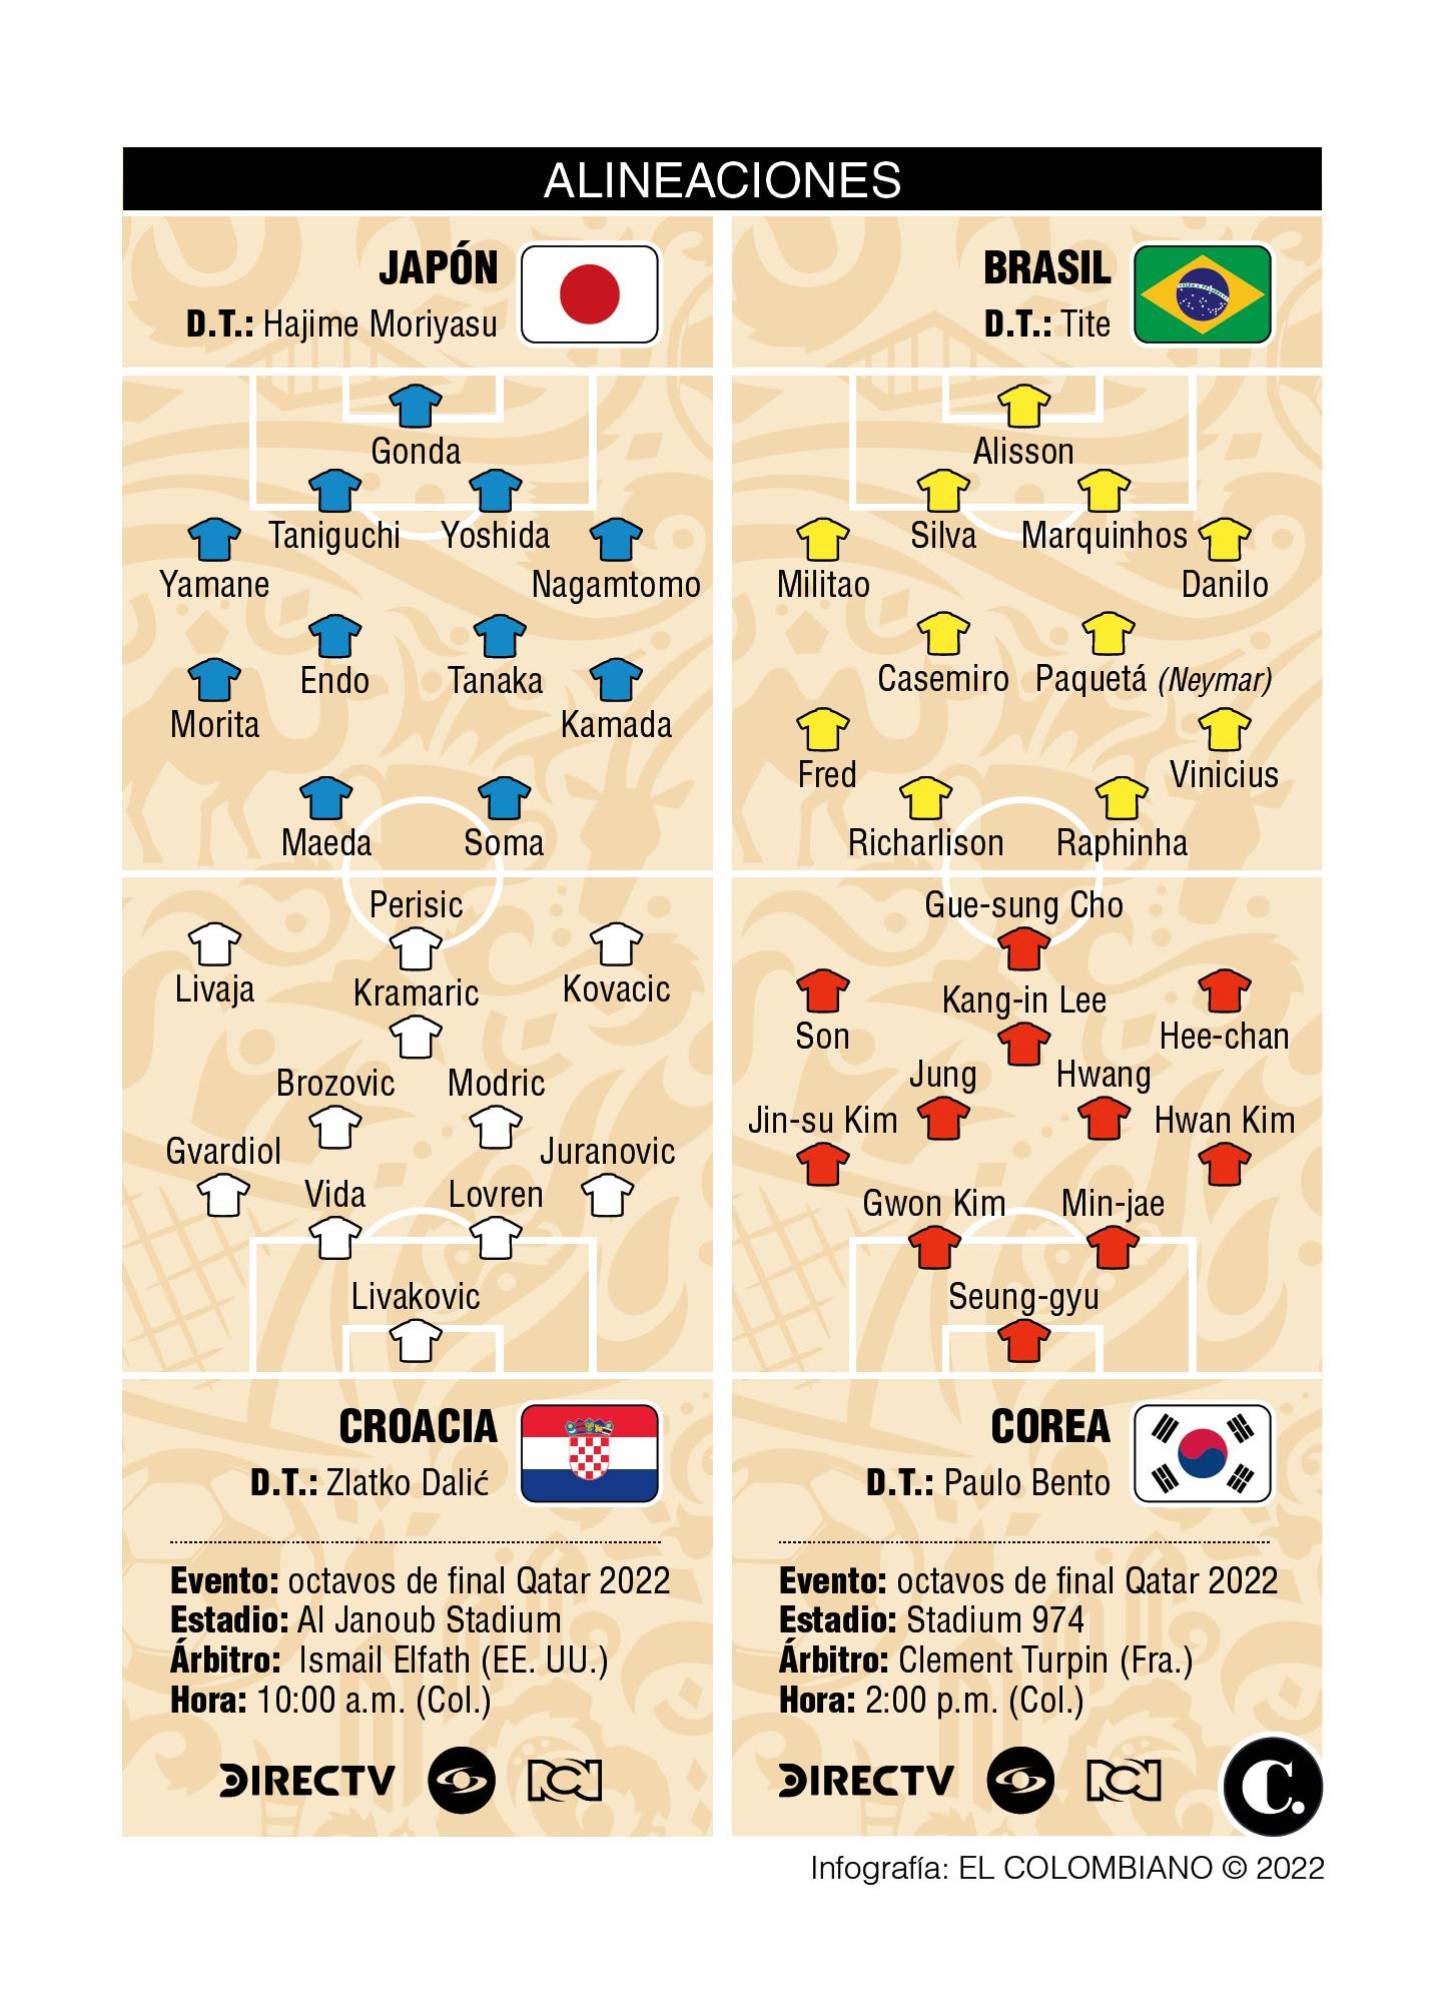 Prográmese, este lunes en octavos de final de Qatar-2022: Brasil-Corea y Croacia-Japón, por dónde verlos 